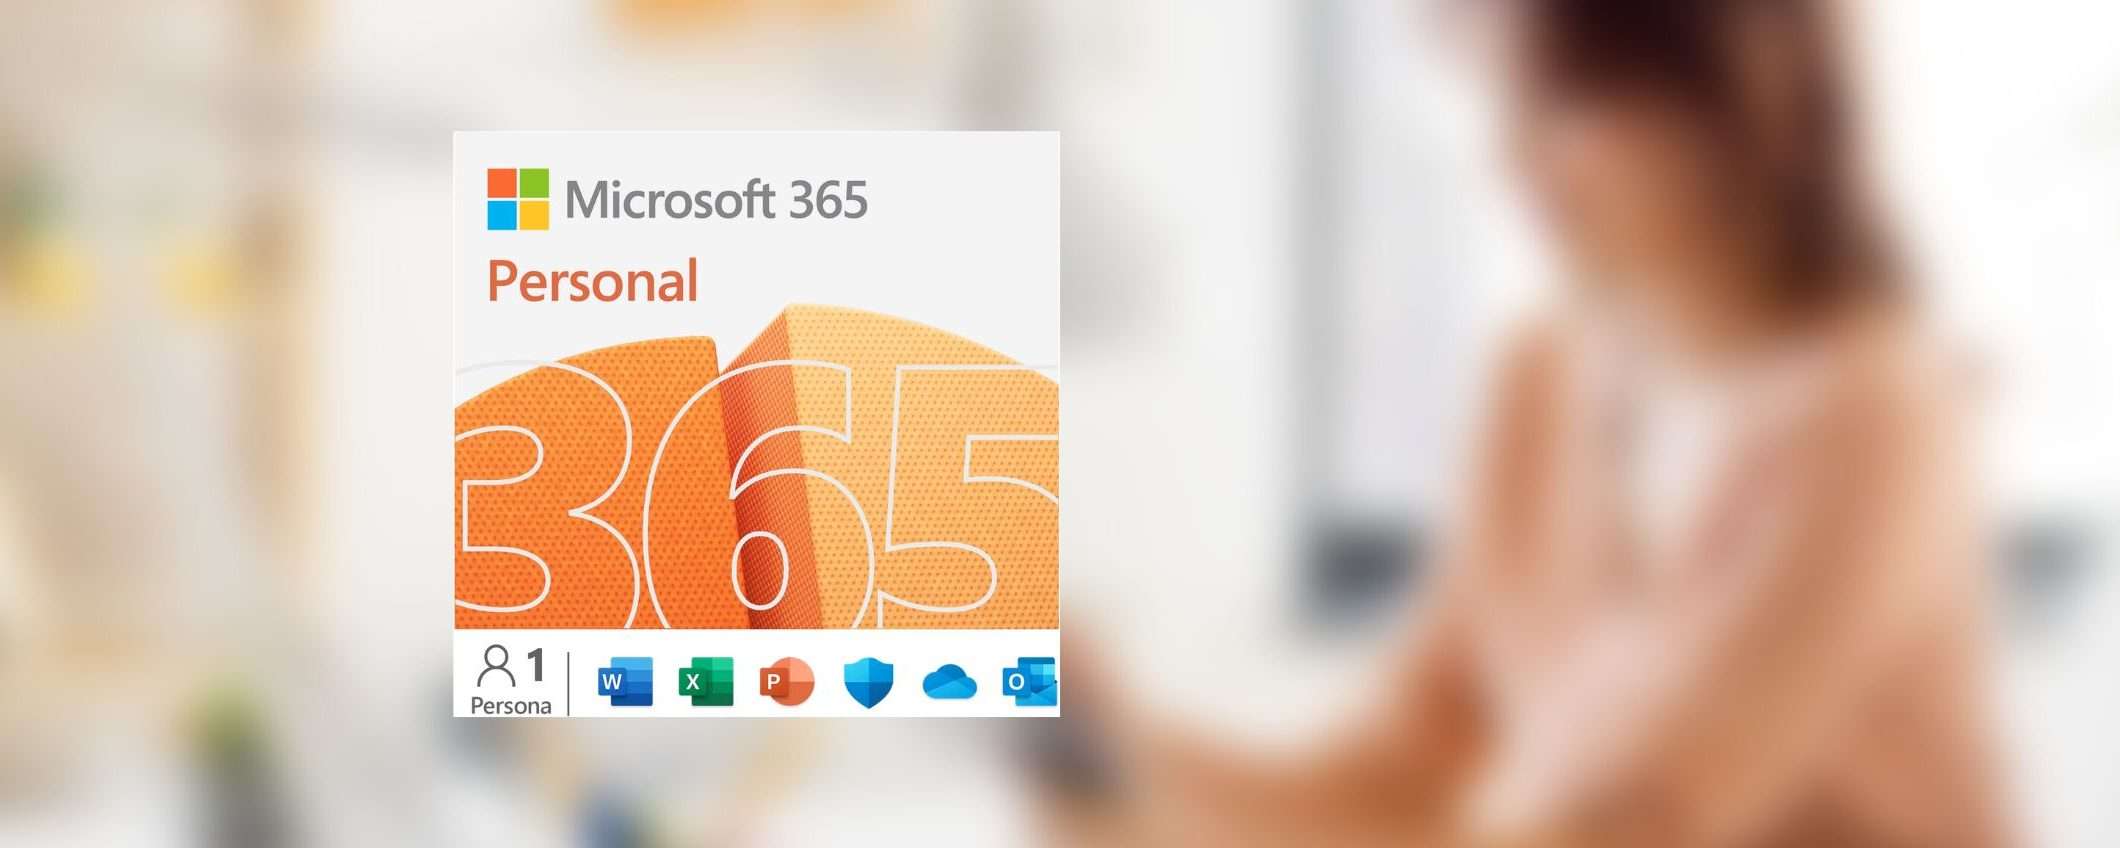 Microsoft 365 Personal in offerta su Amazon: consegna via email